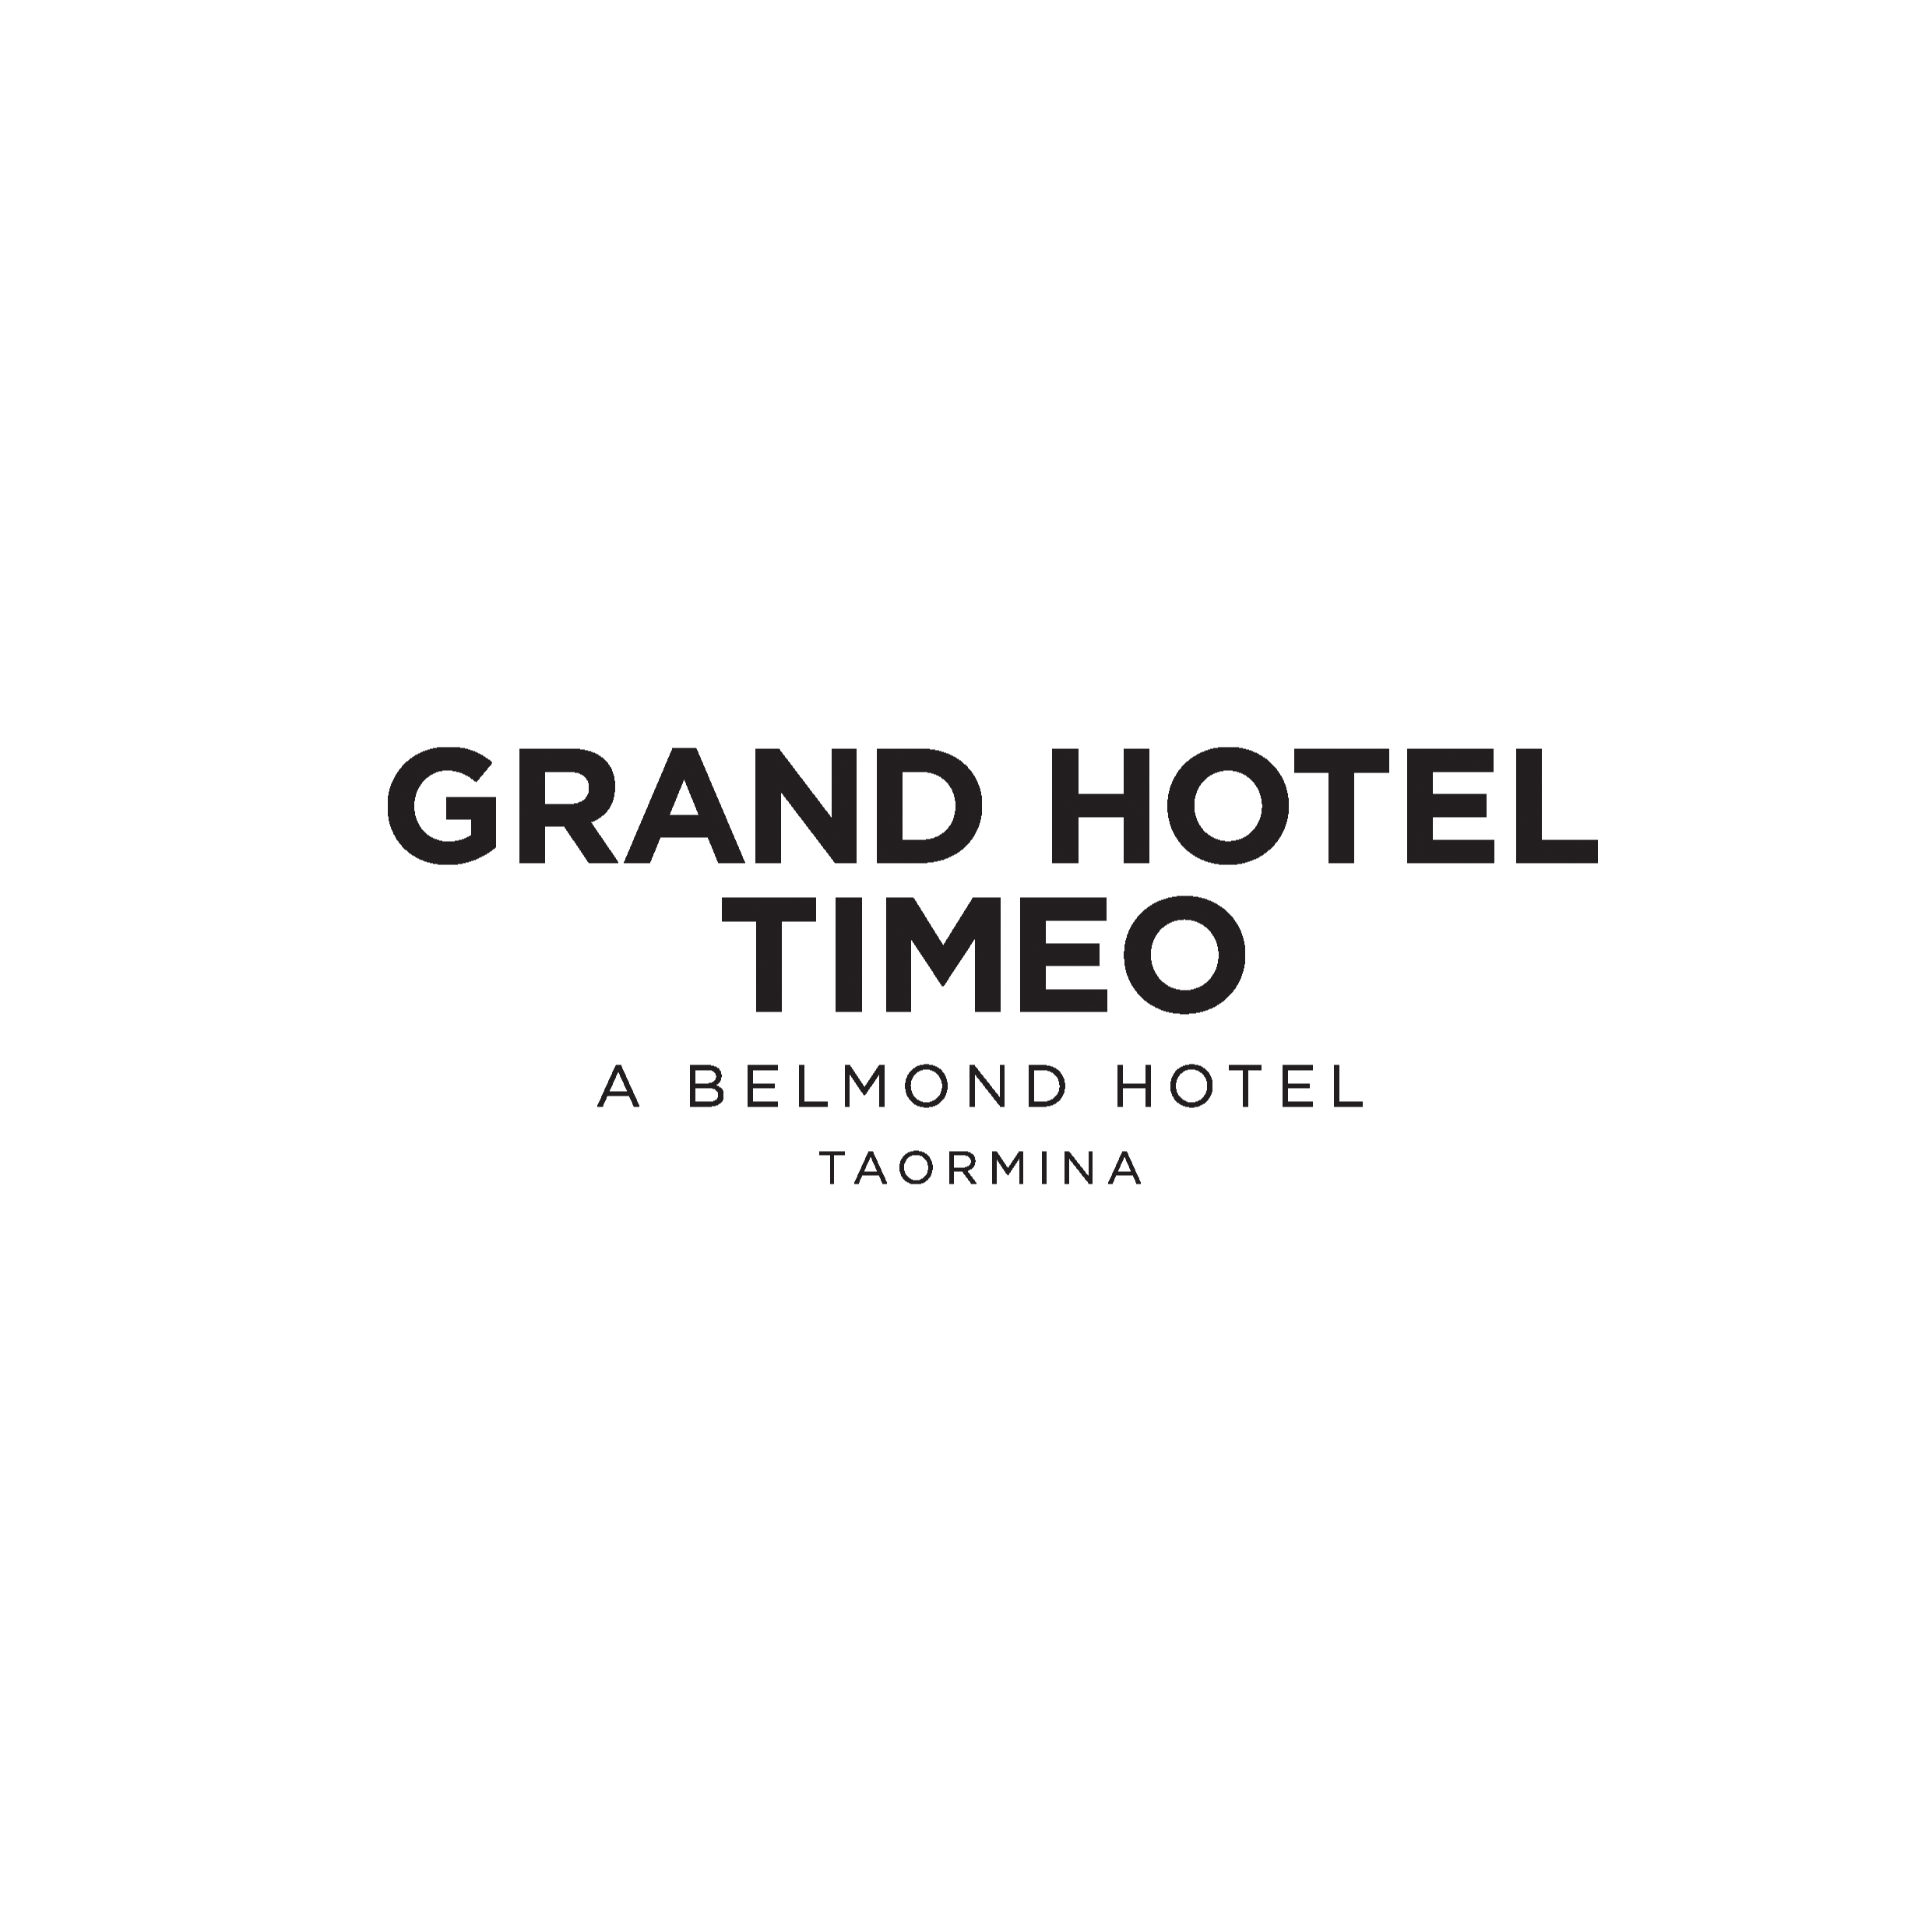 Grand Hotel Timeo, A Belmond Hotel, Taormina - Alberghi Taormina